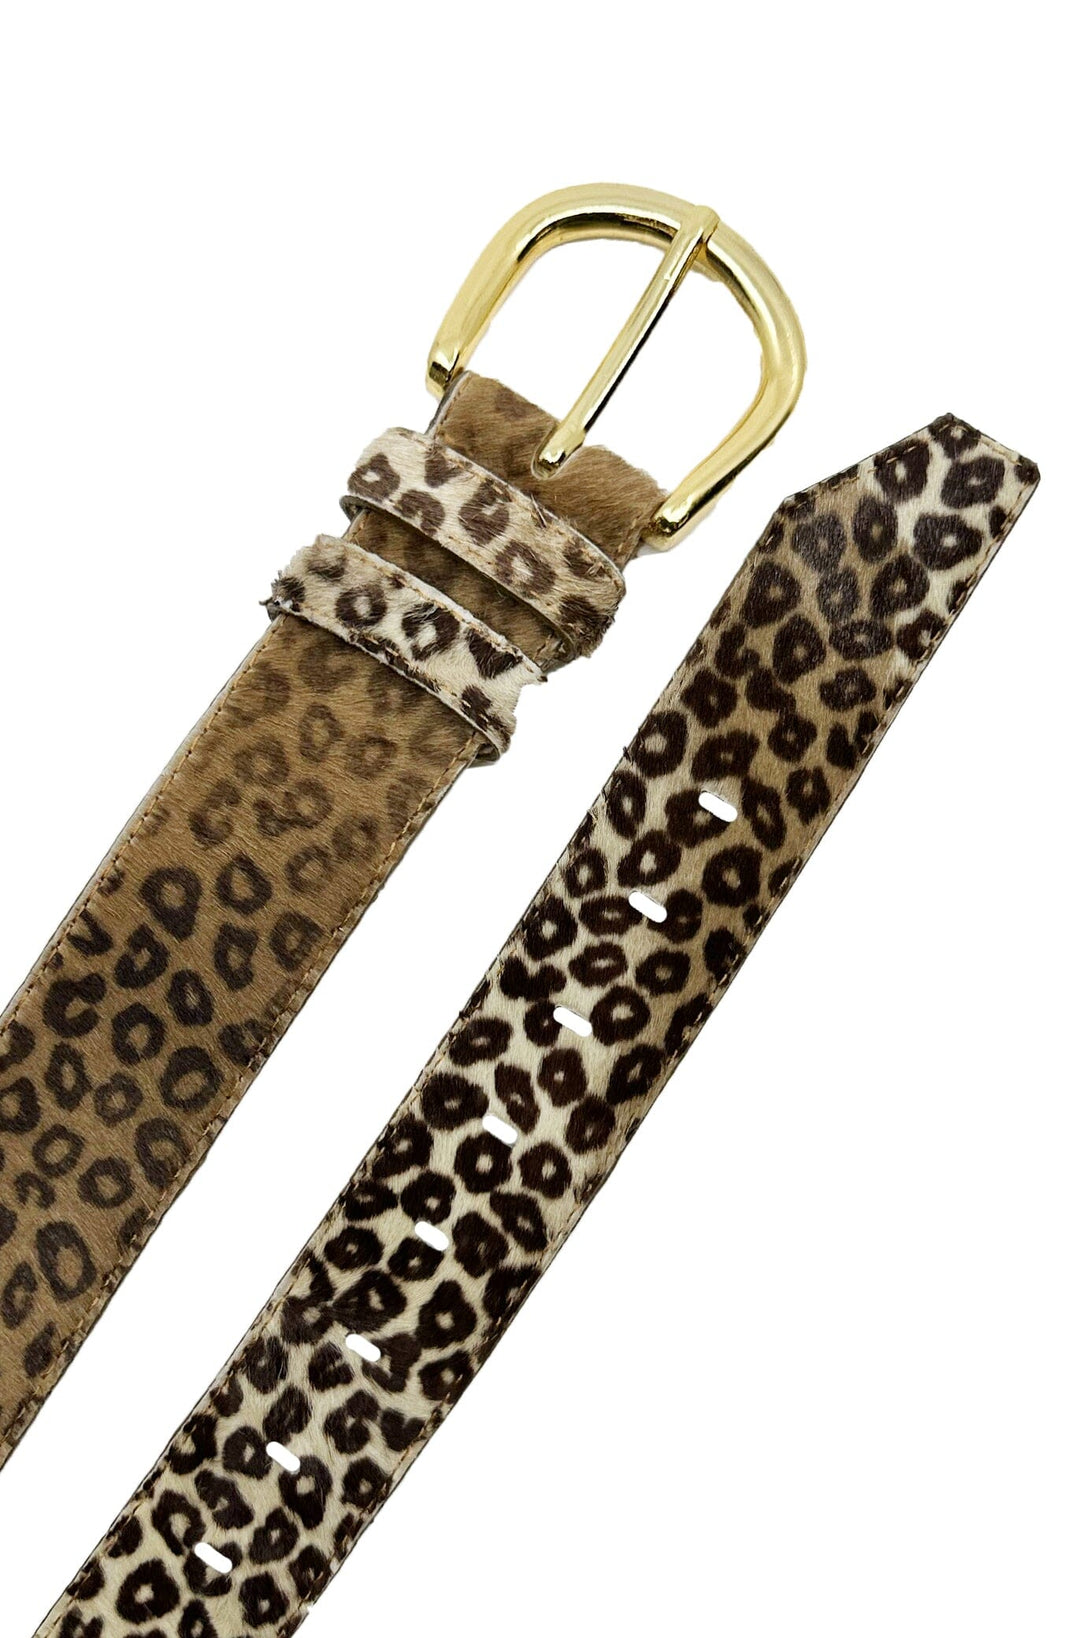 Jeans Belt Cowhide Leather Leopard Belts